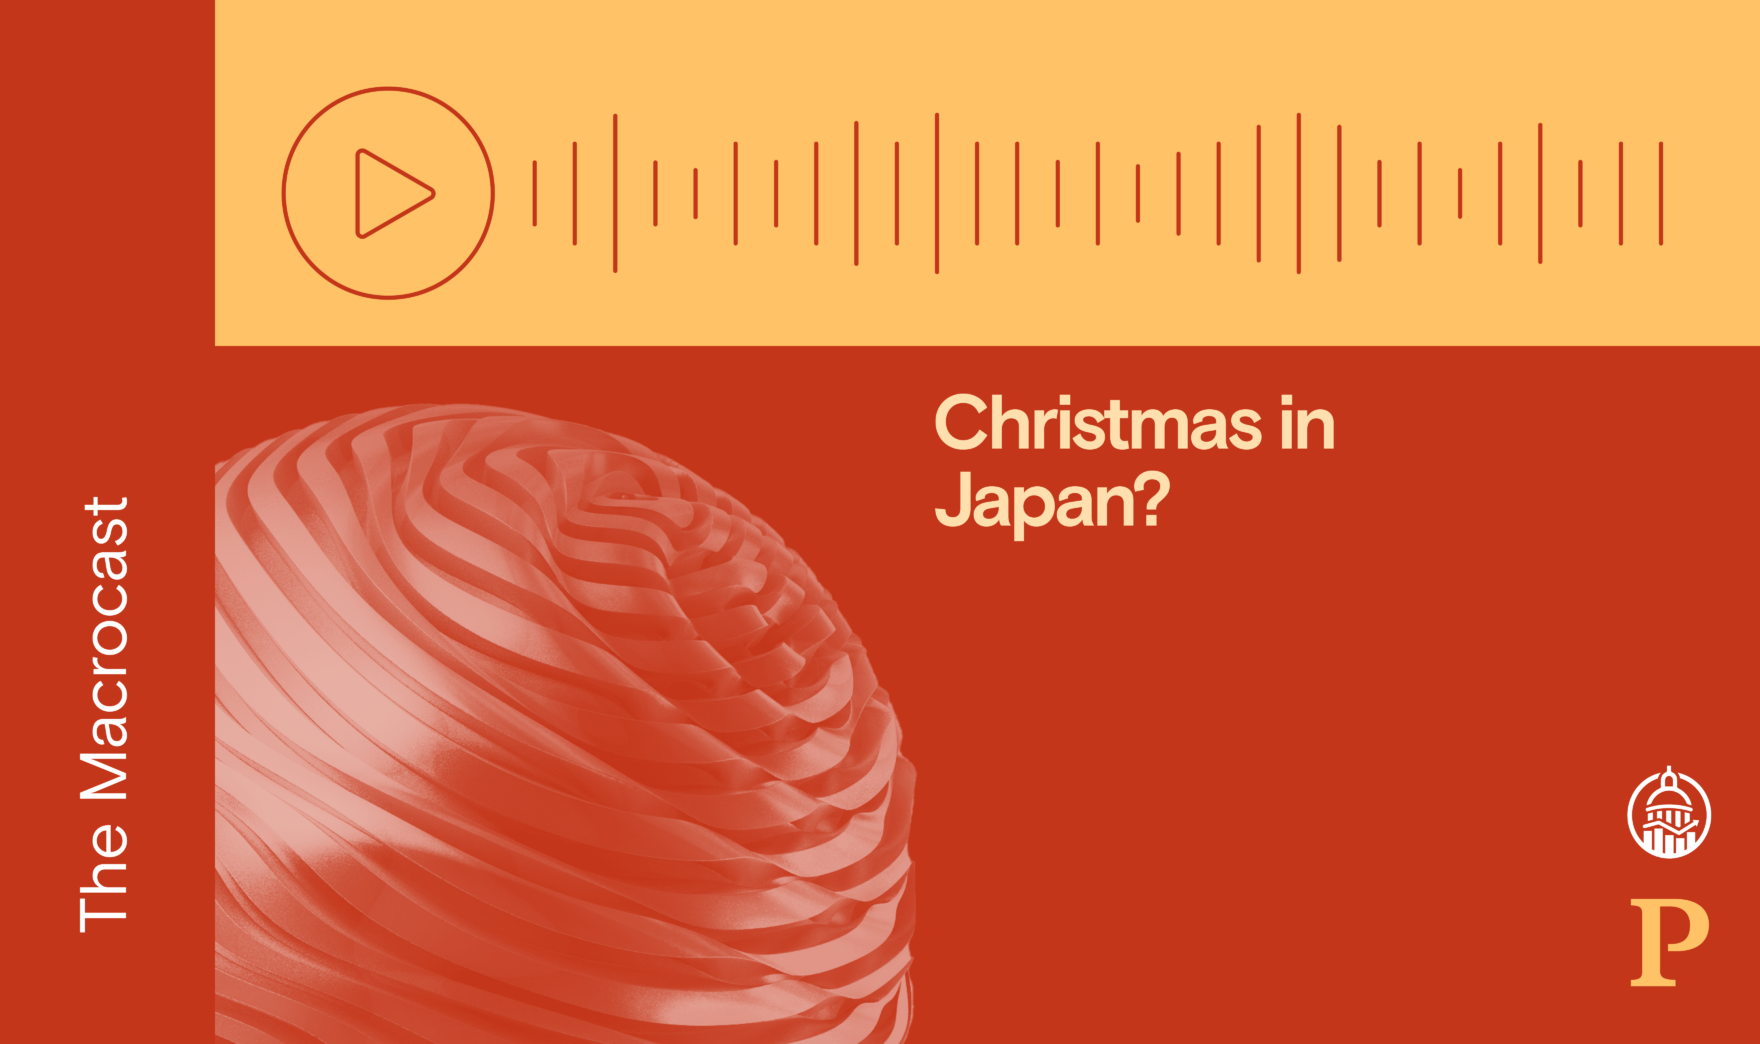 Macrocast: Christmas in Japan?